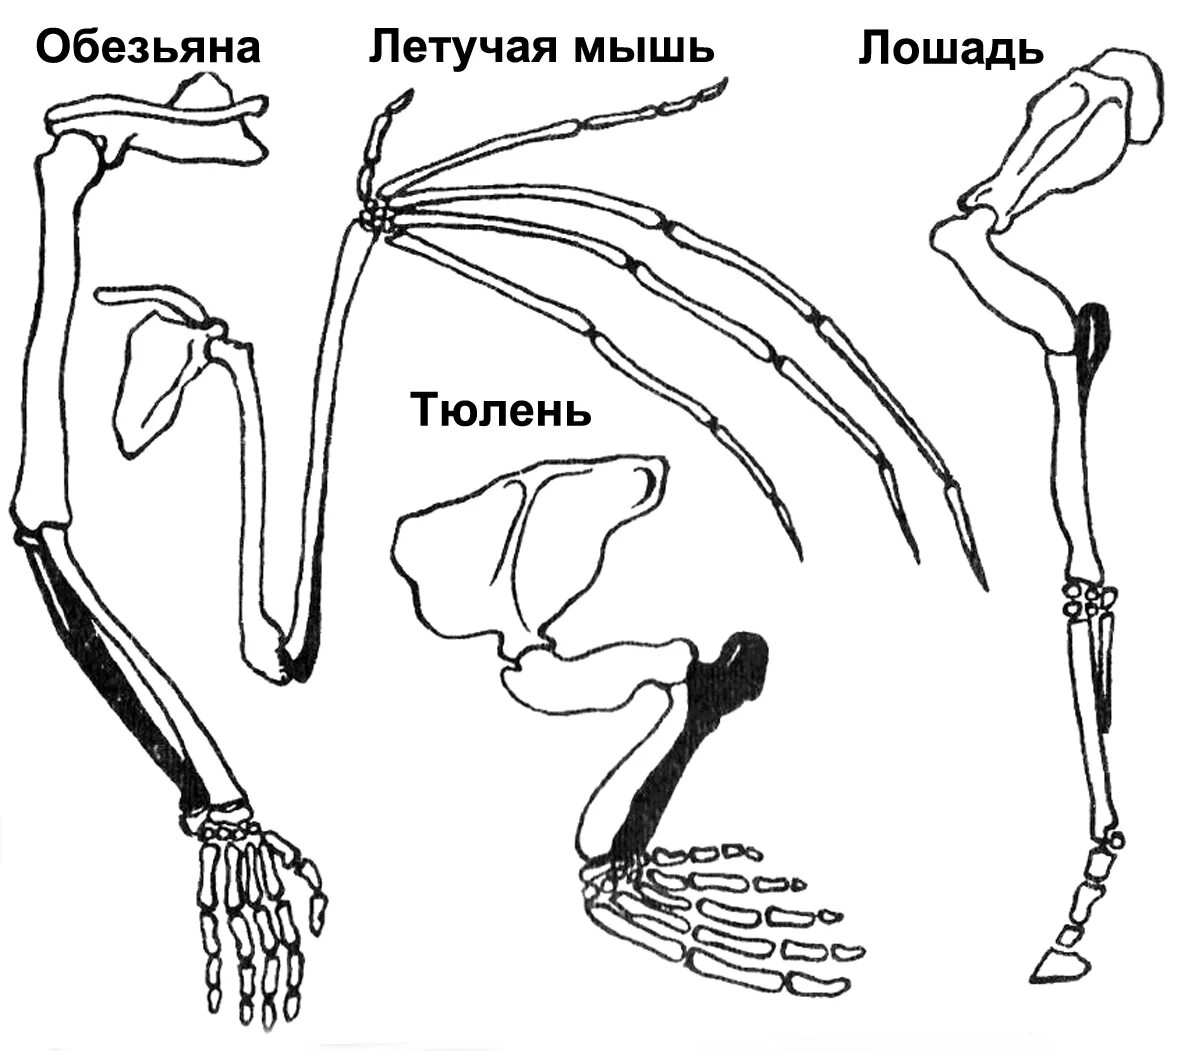 Передние конечности крота и ласты кита. Скелет пояса задних конечностей млекопитающих. Пояс задних конечностей у млекопитающих. Строение задних конечностей млекопитающих. Строение скелета верхней конечности позвоночных животных.